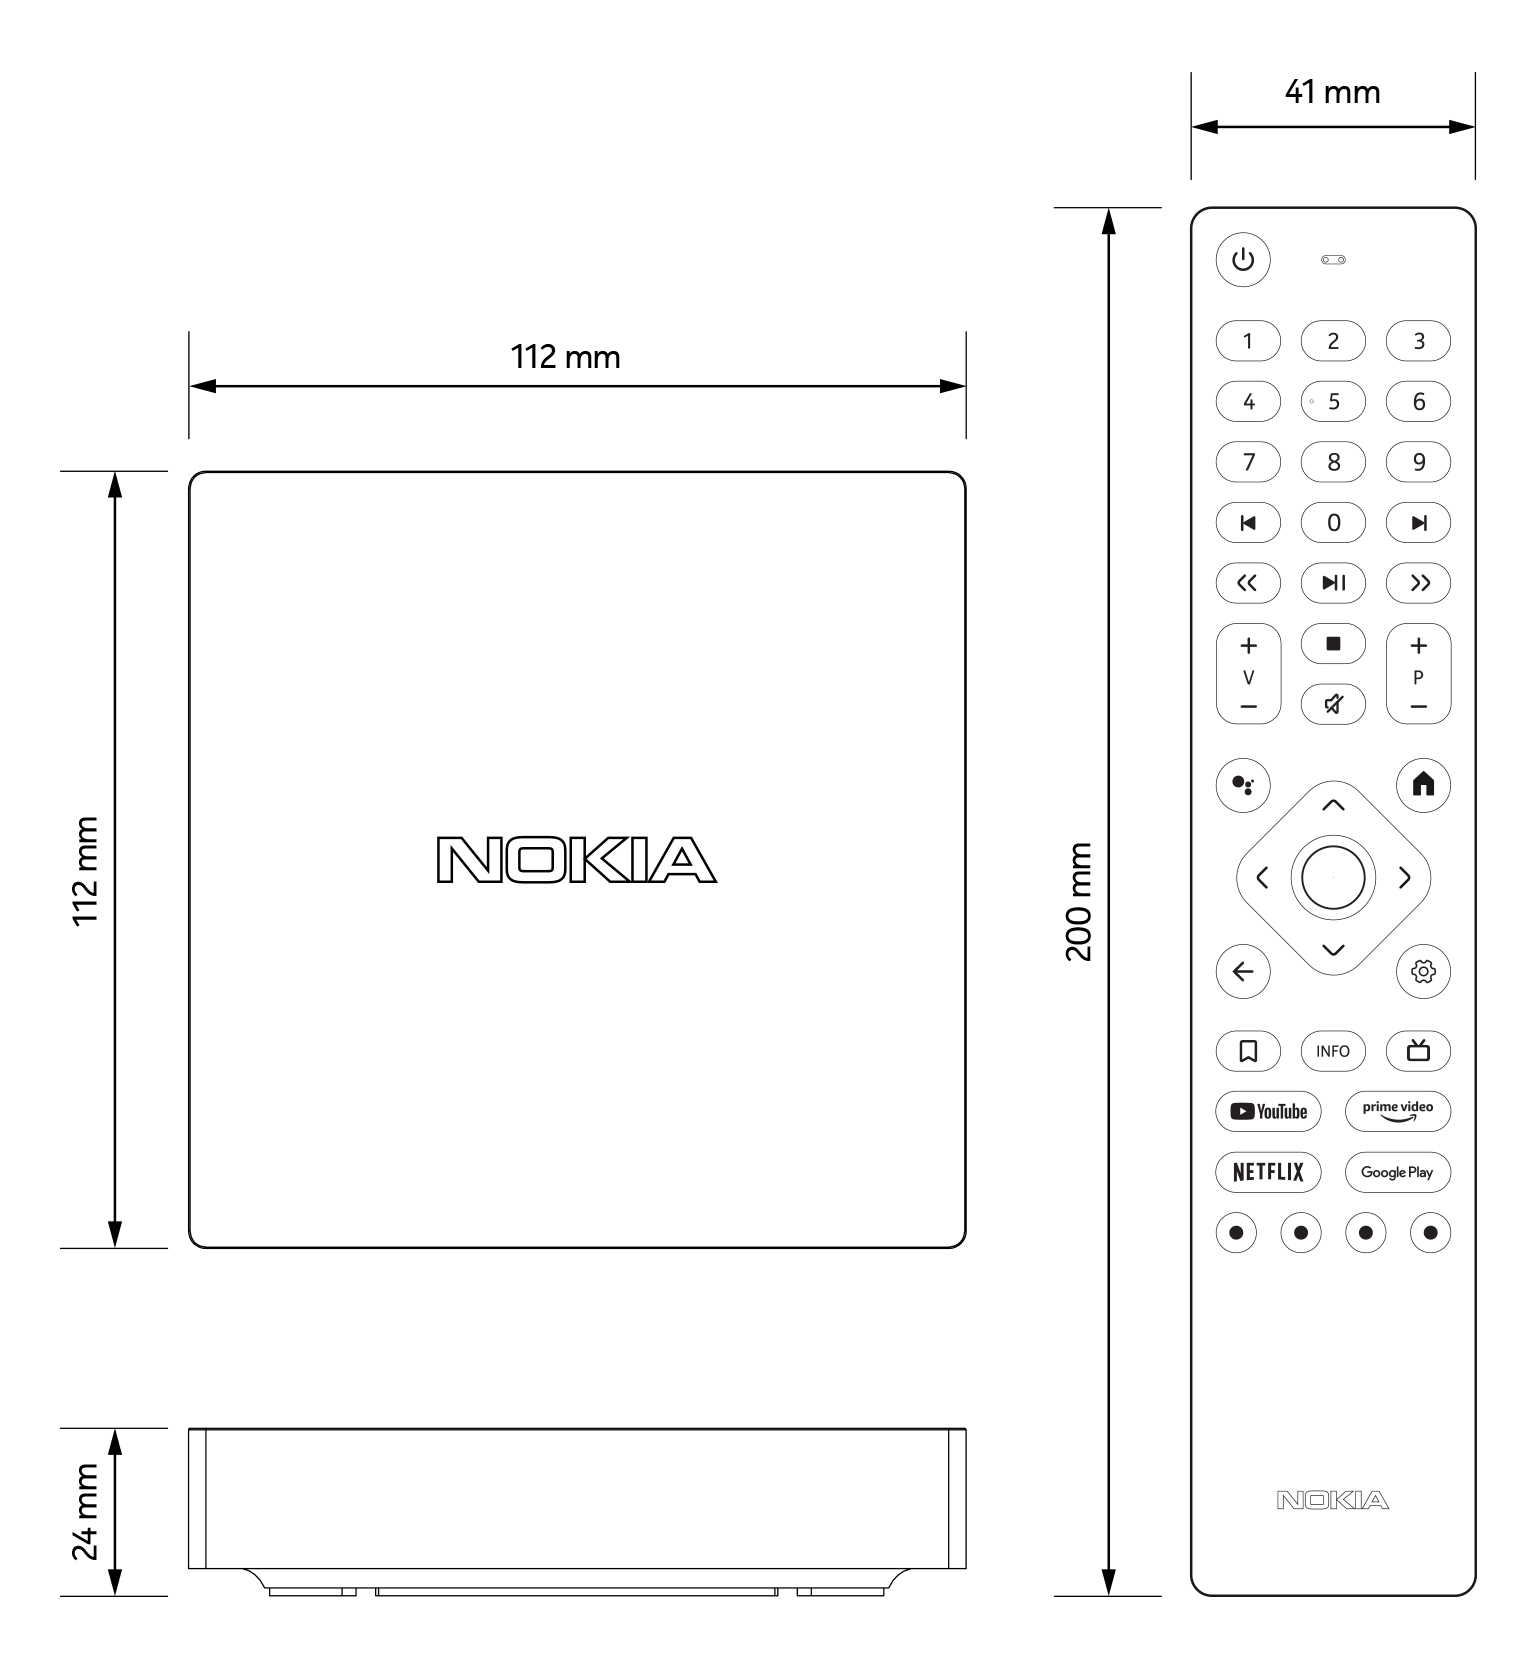 Nokia Streaming Box 8010, análisis: nuevo Android TV certificado